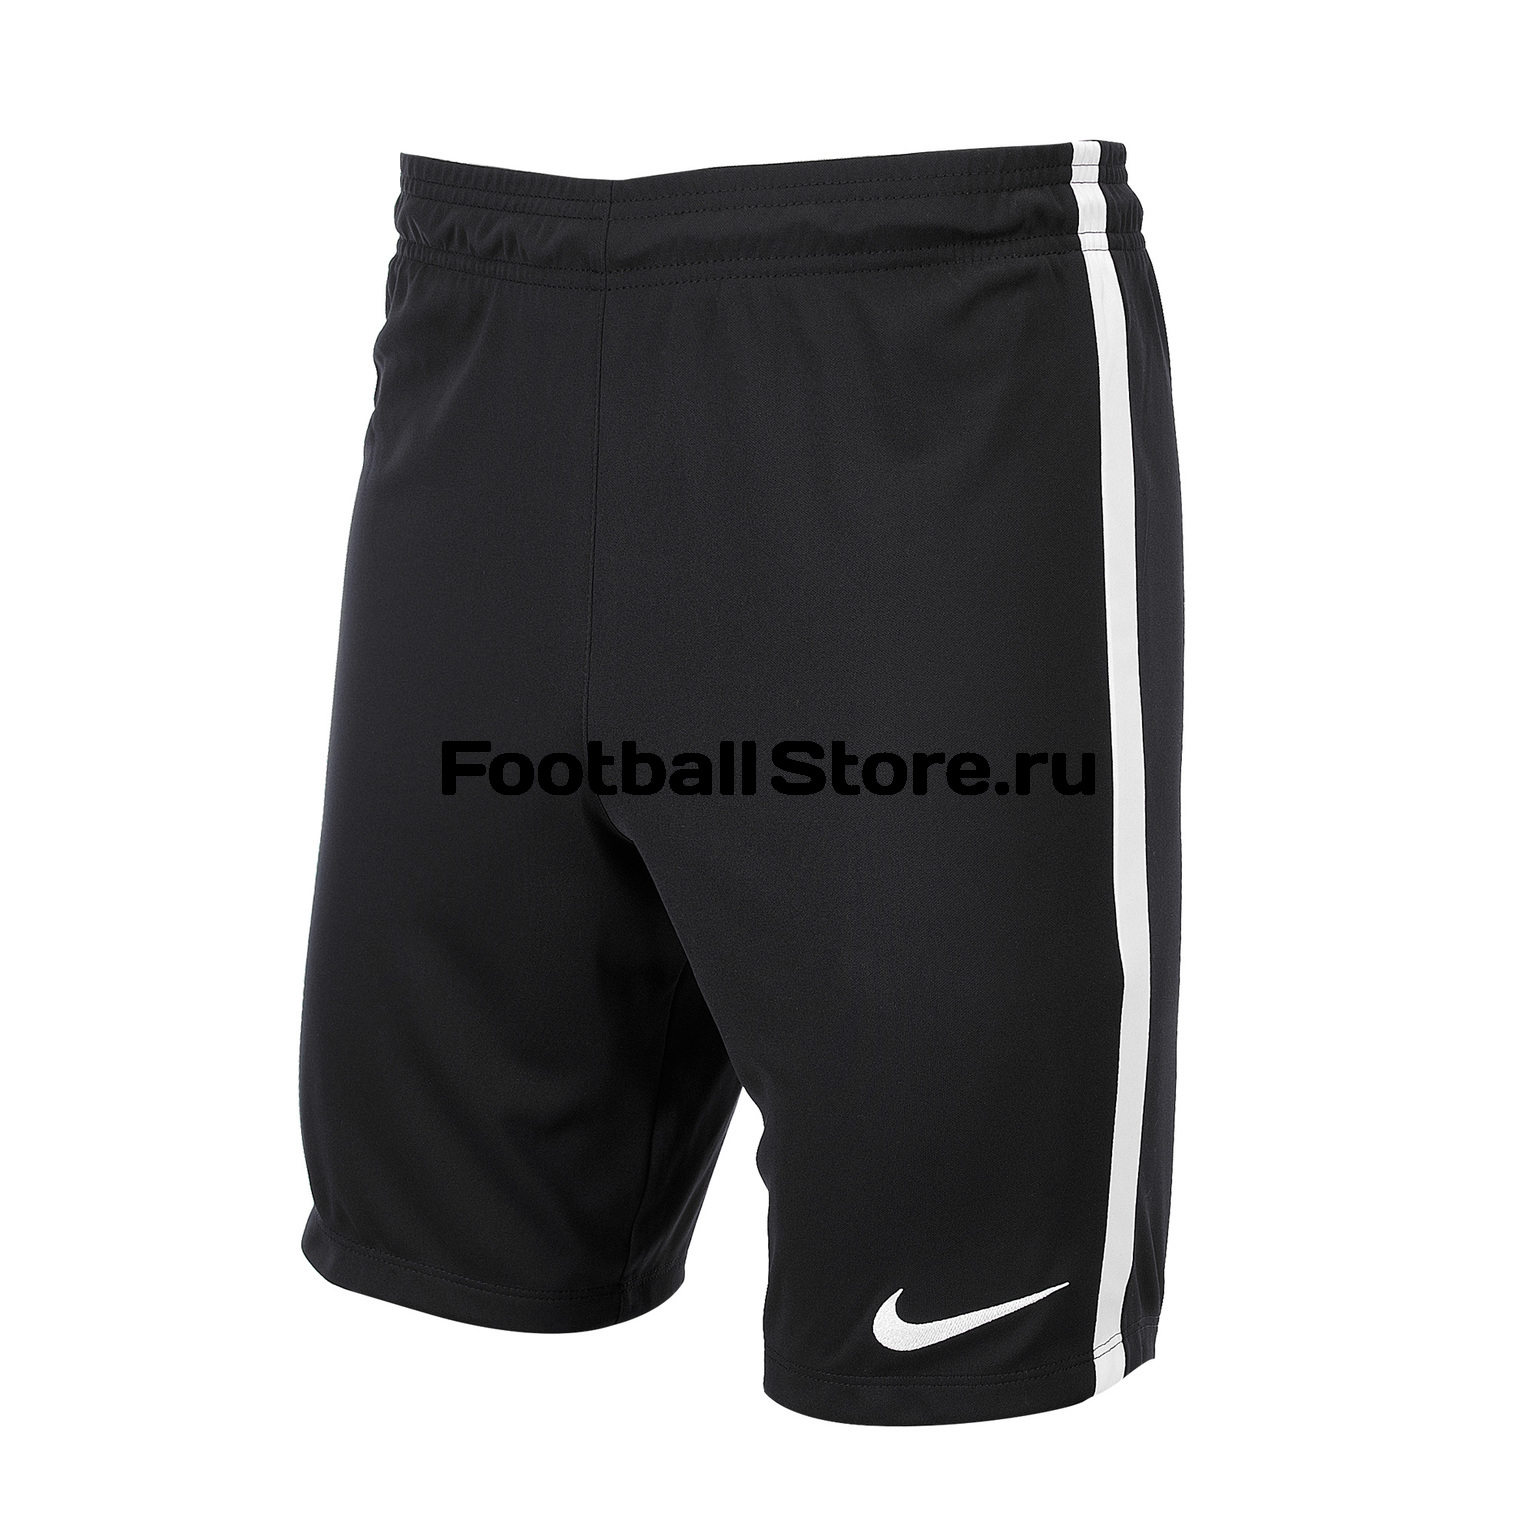 Игровые шорты Nike League Knit Short NB 725881-010